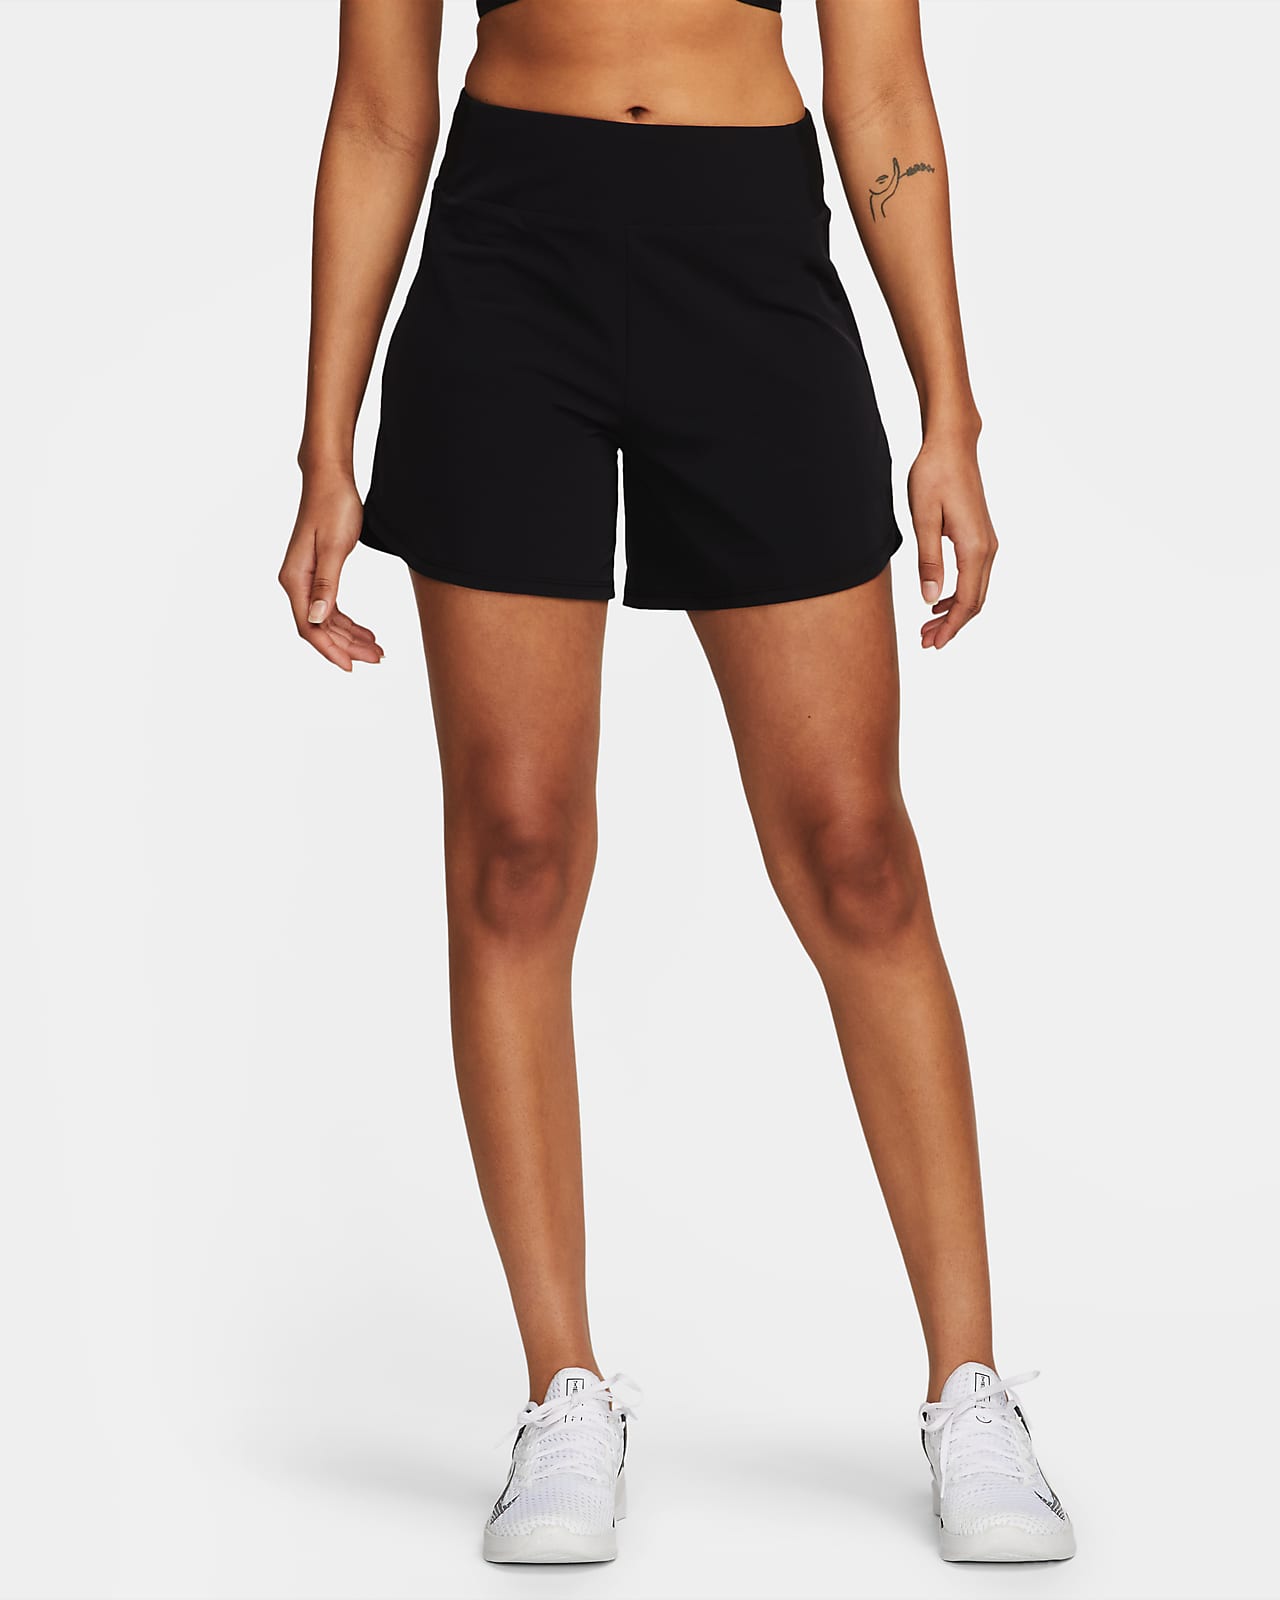 Women's Tennis Shorts. Nike CA